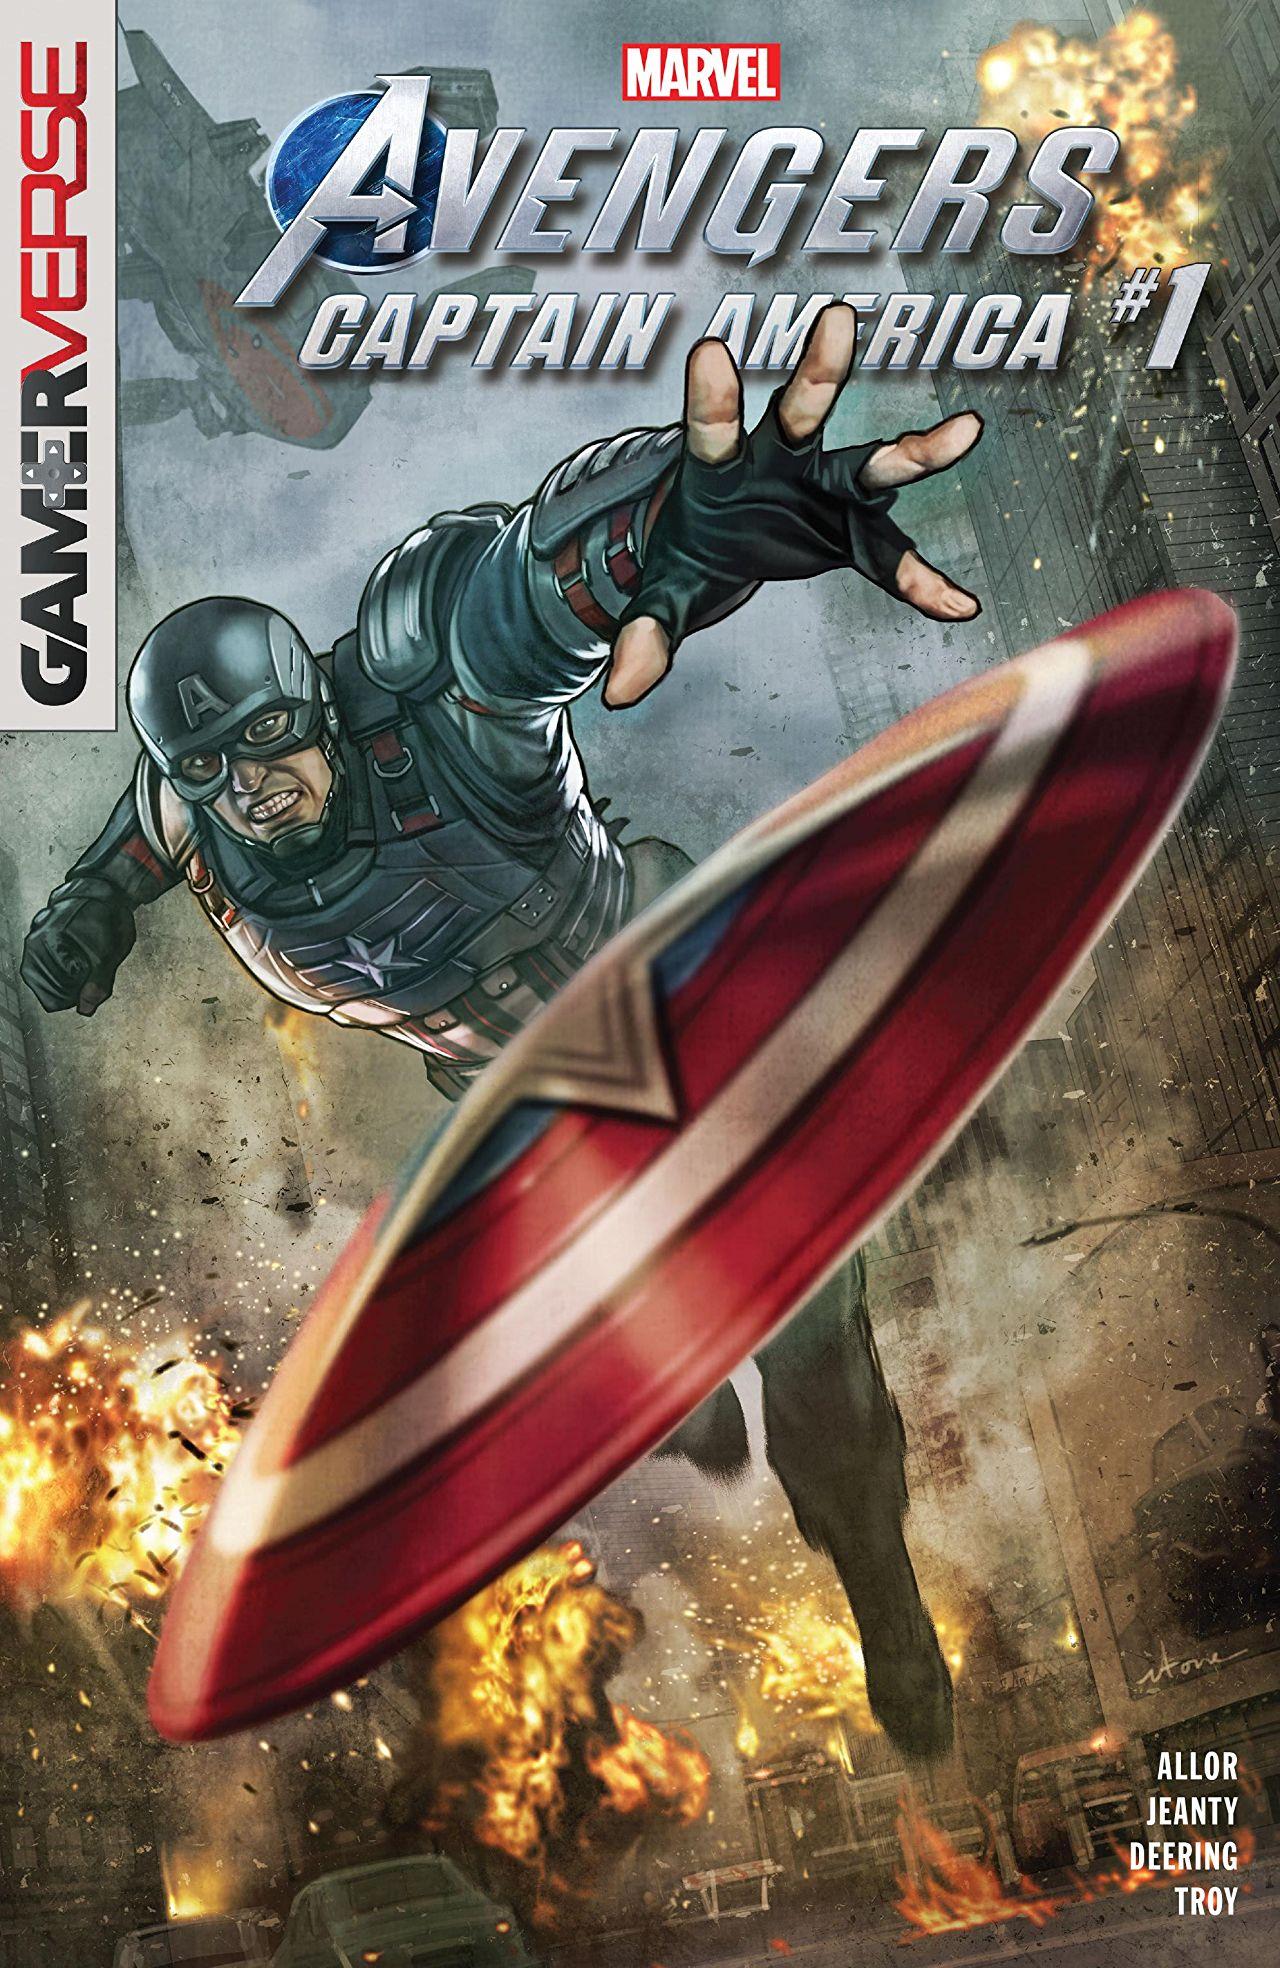 Marvel's Avengers: Captain America Vol. 1 #1